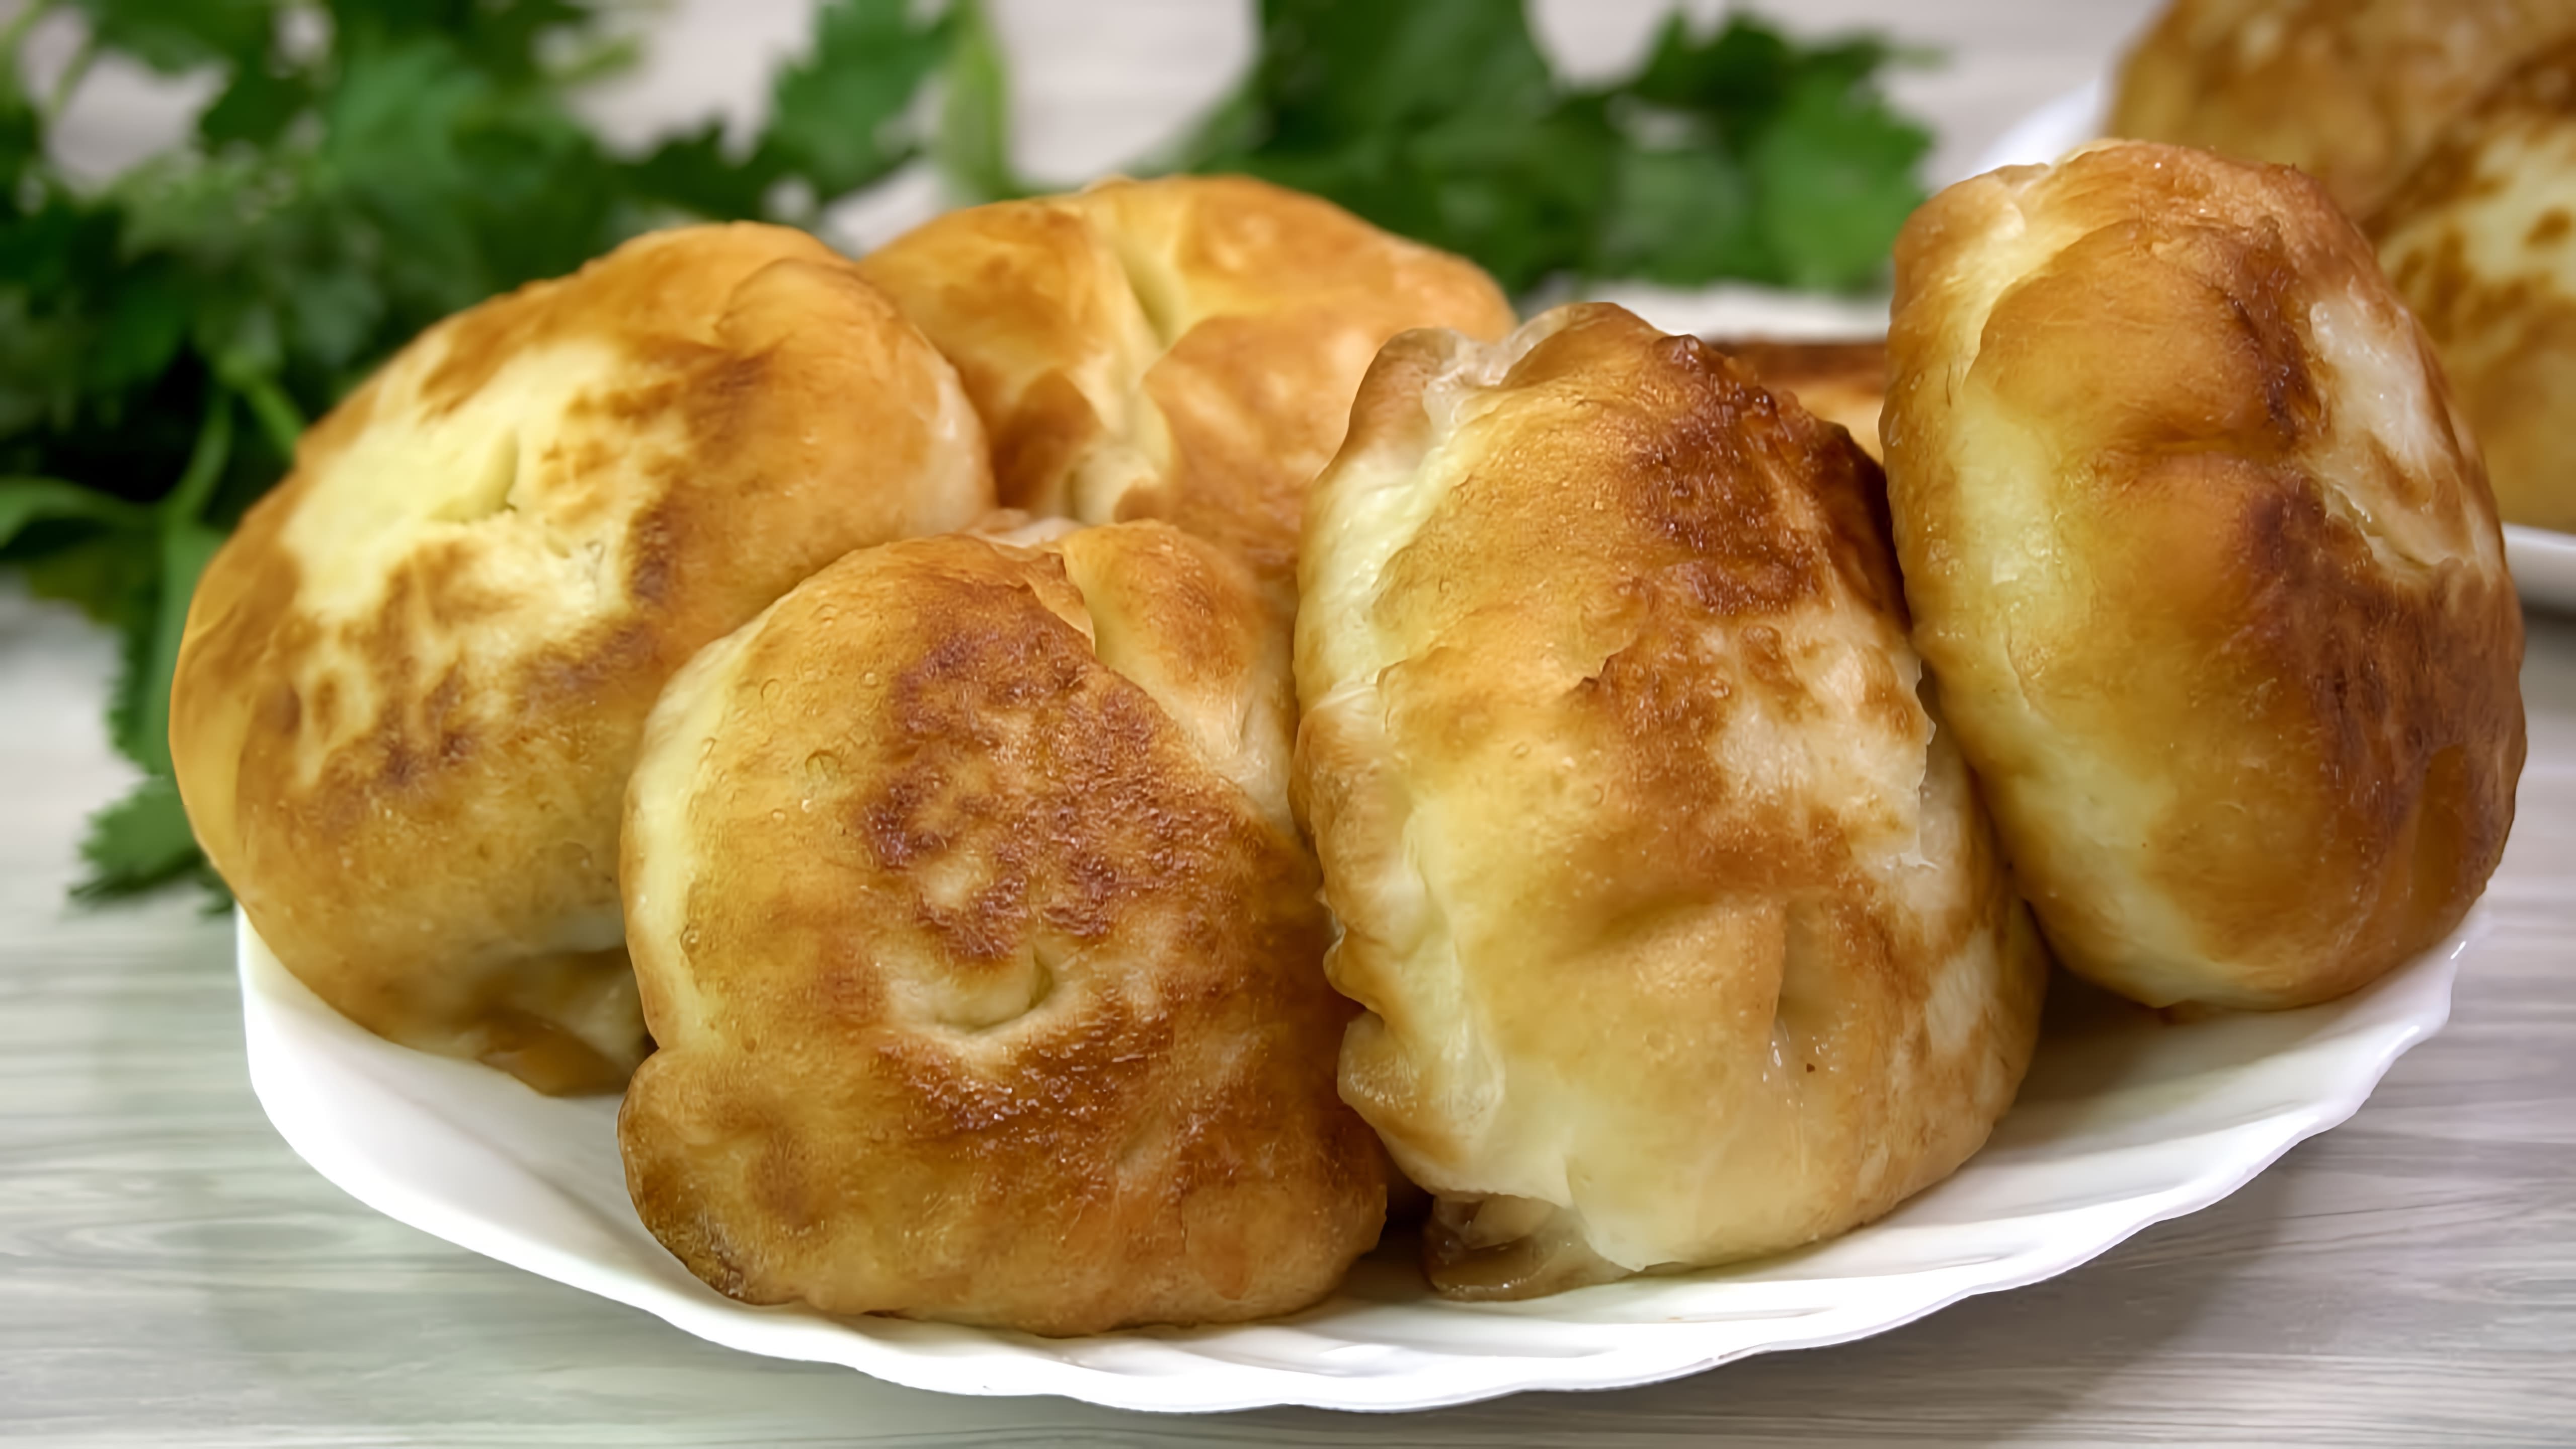 В этом видео демонстрируется рецепт приготовления необычного блюда - "ХОШАН", которое является сочетанием беляшей и мантов